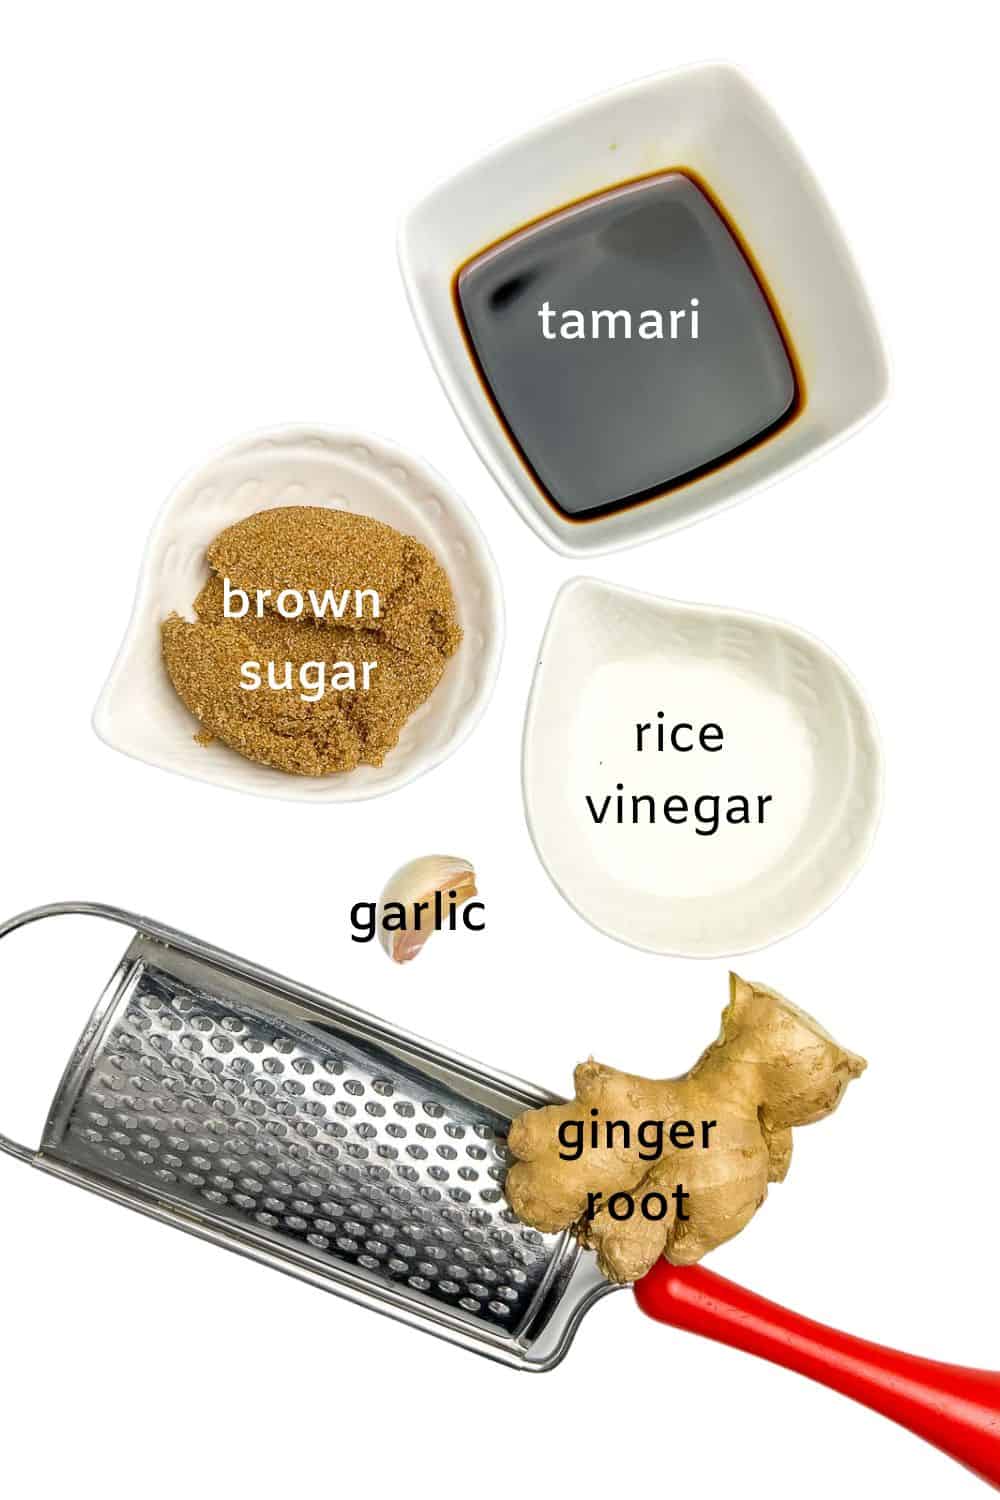 Labelled ingredients for teriyaki marinade.